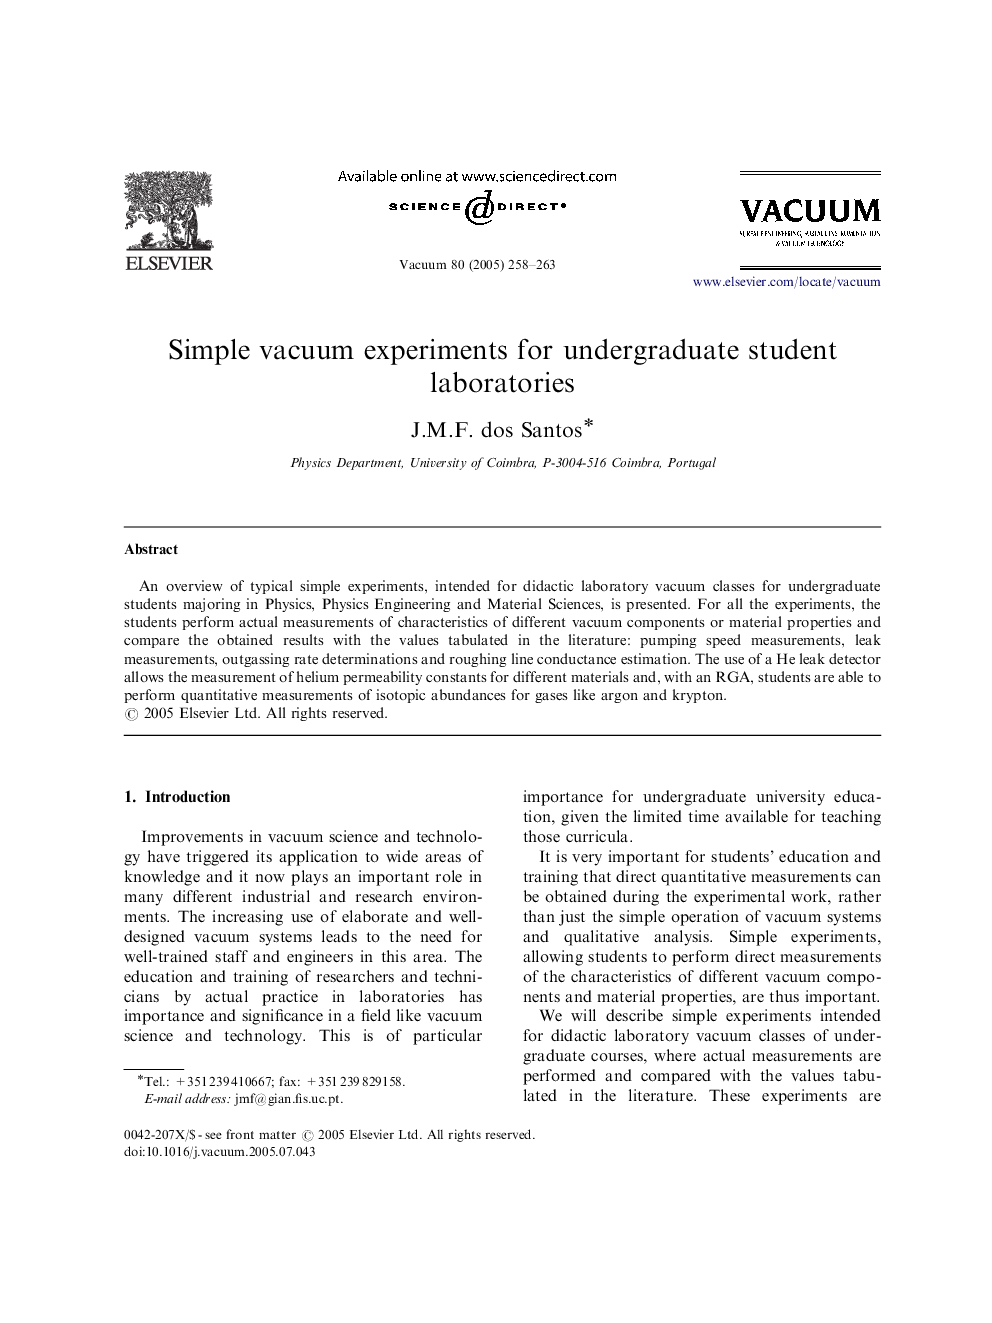 Simple vacuum experiments for undergraduate student laboratories